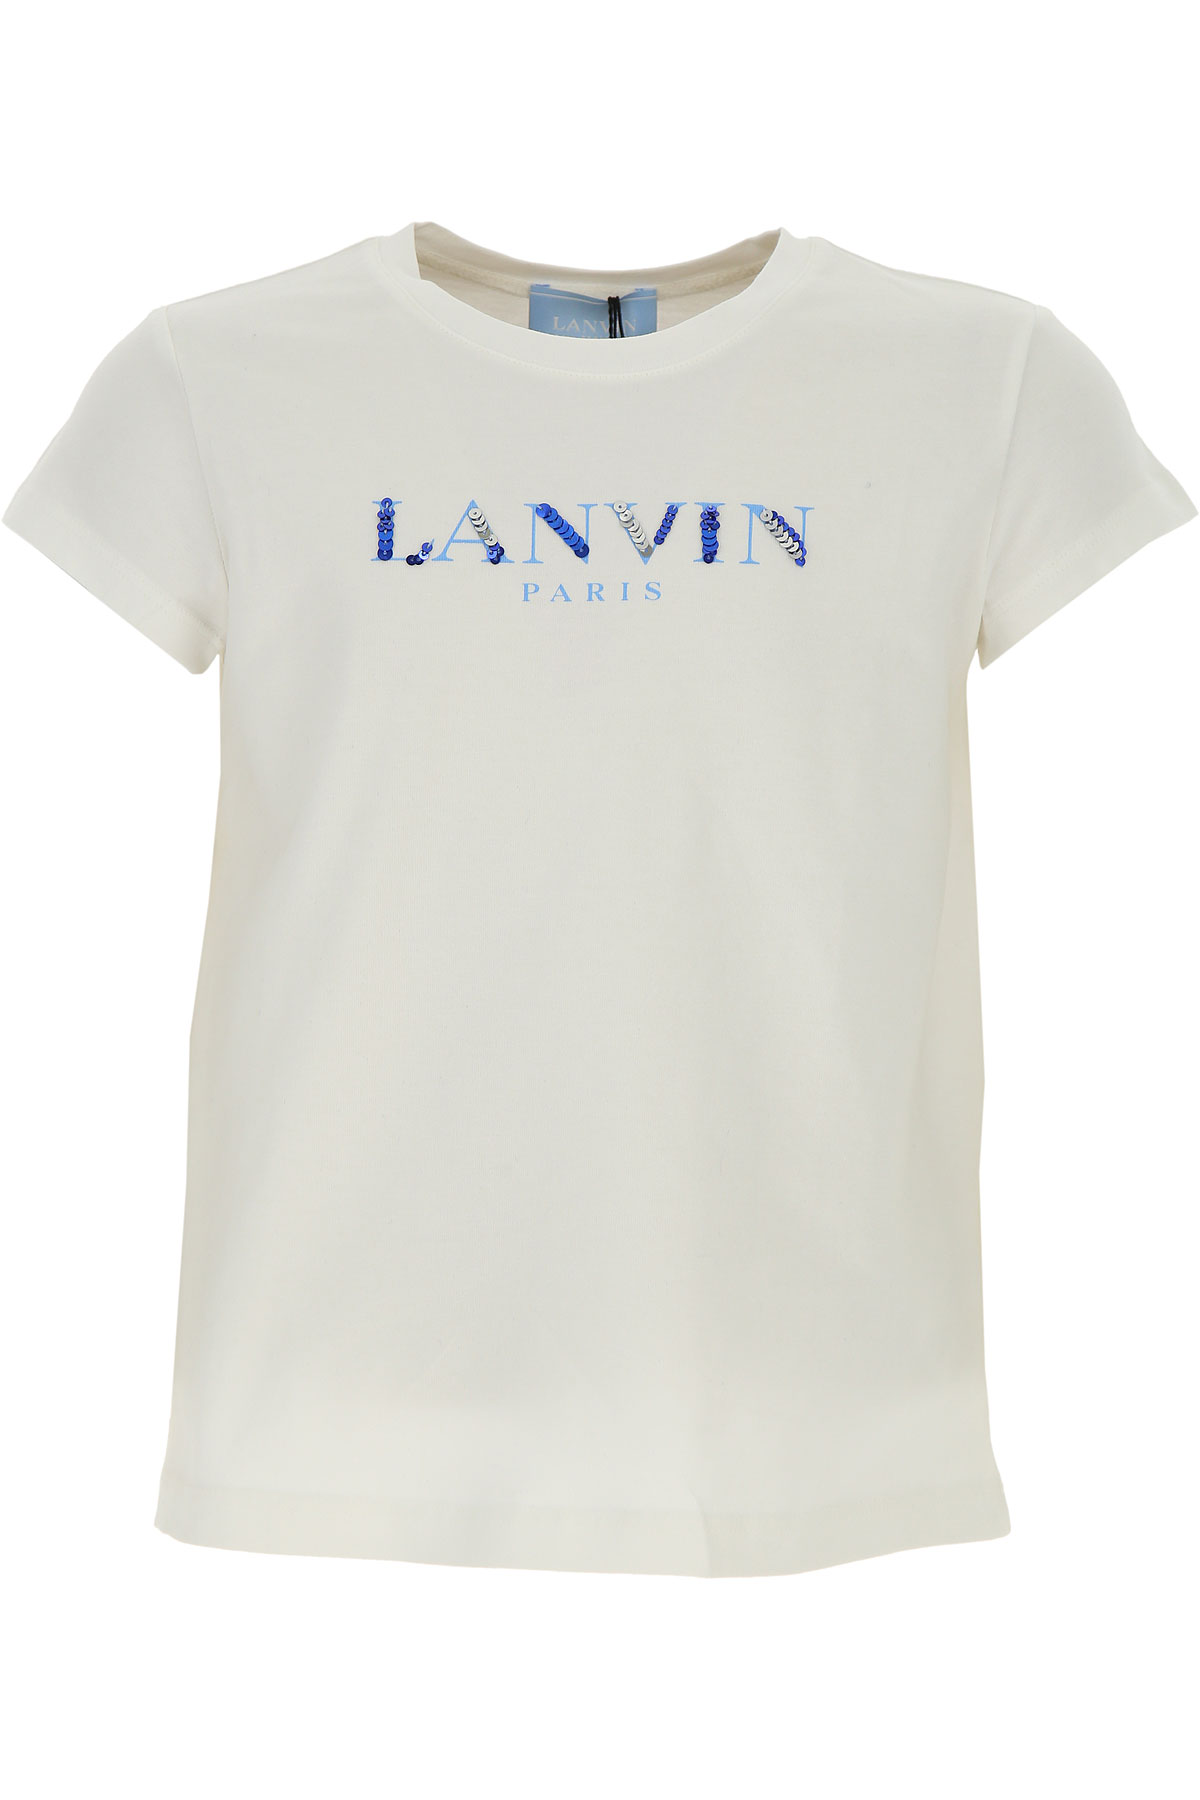 Lanvin T-Shirt Enfant pour Fille, Blanc, Coton, 2017, 10Y 12Y 14Y 2Y 4Y 6Y 8Y